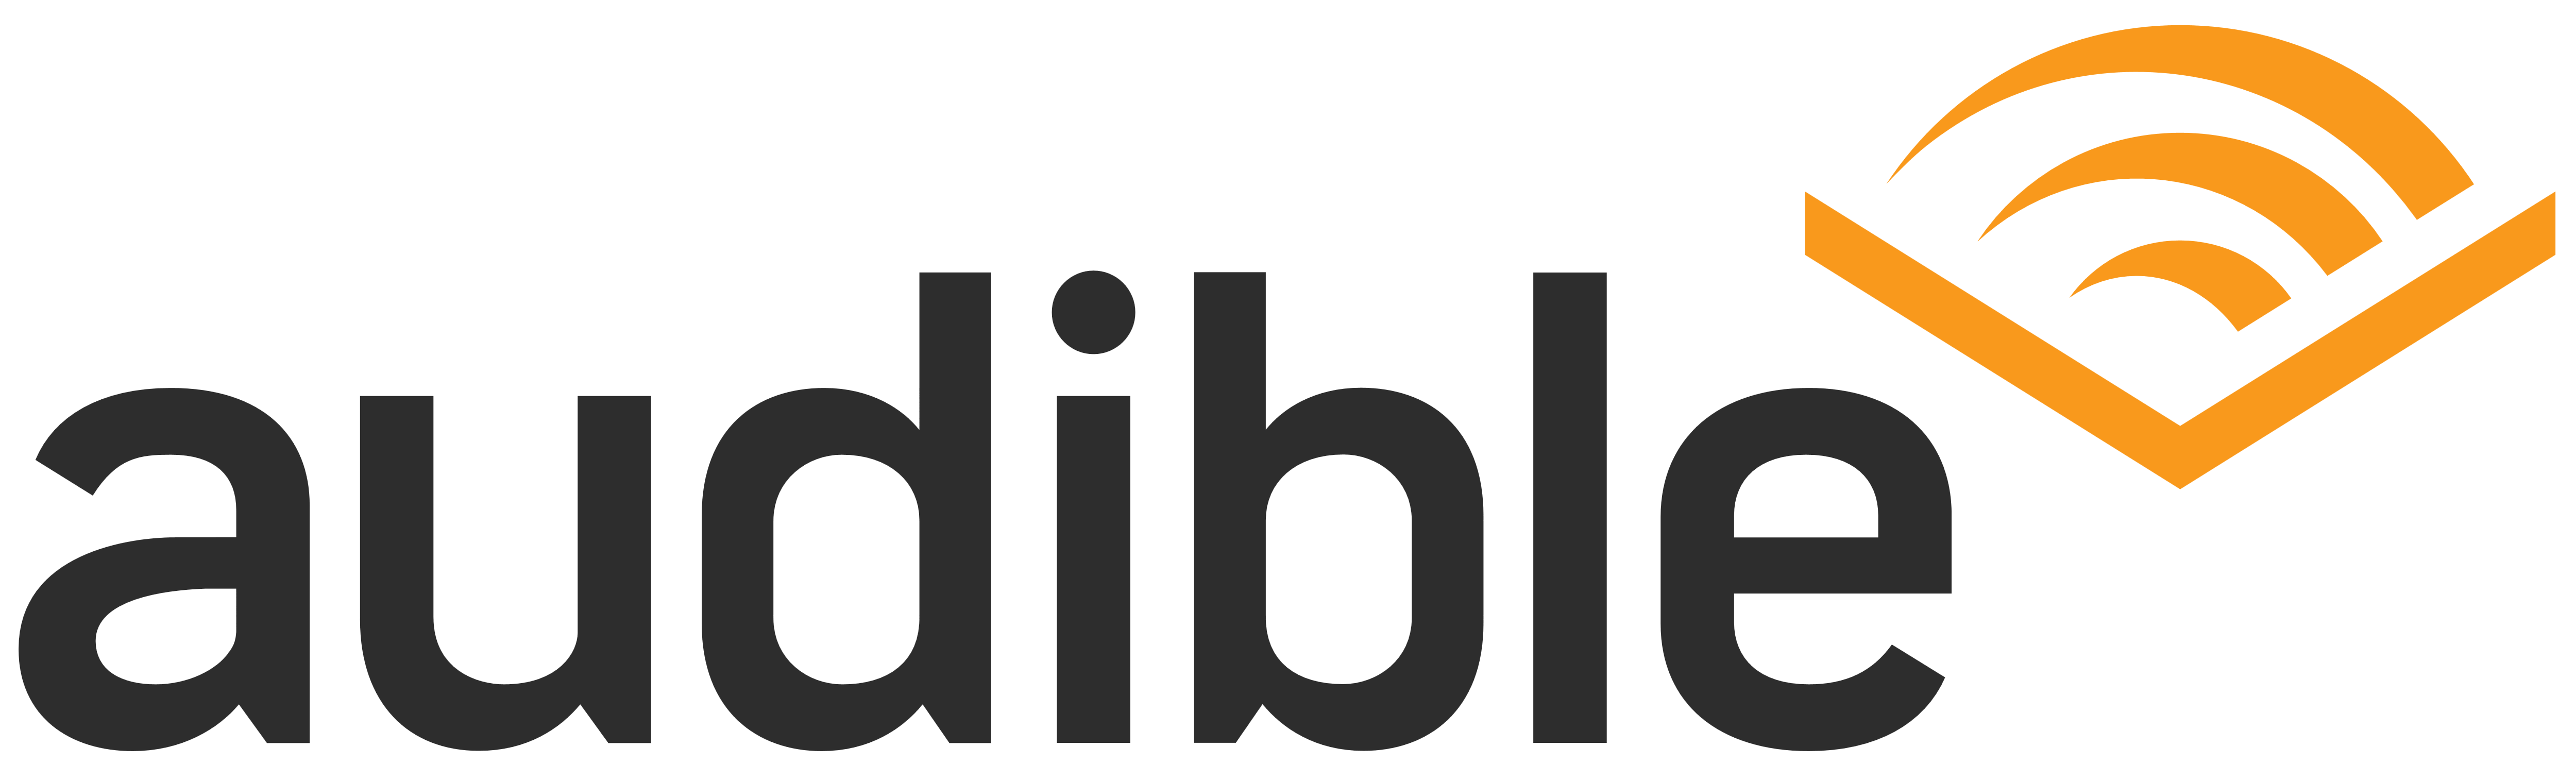 Audible.com Logo - Audible com Logos